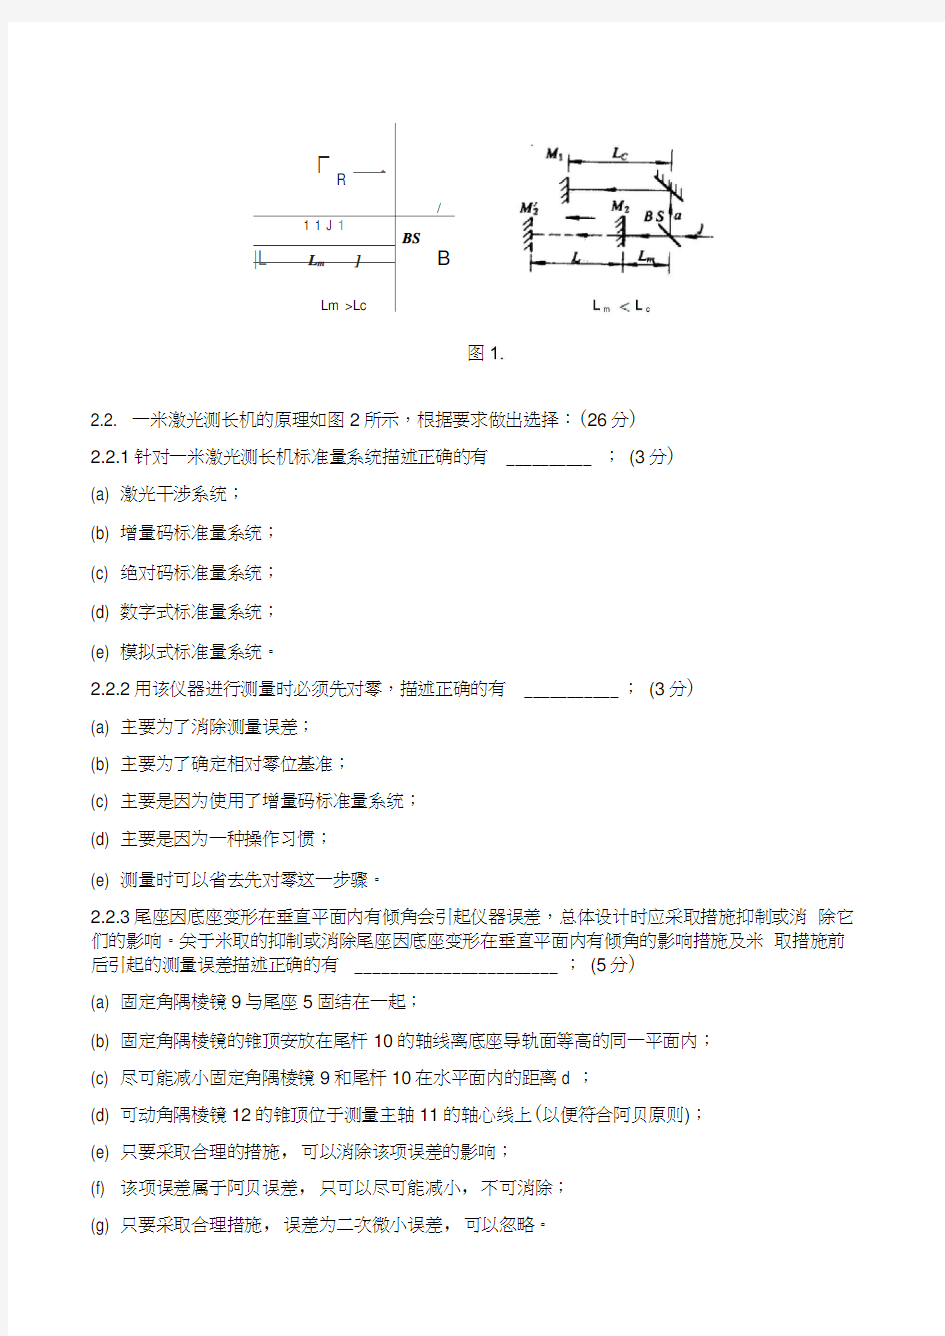 重庆大学测控仪器设计课程试卷